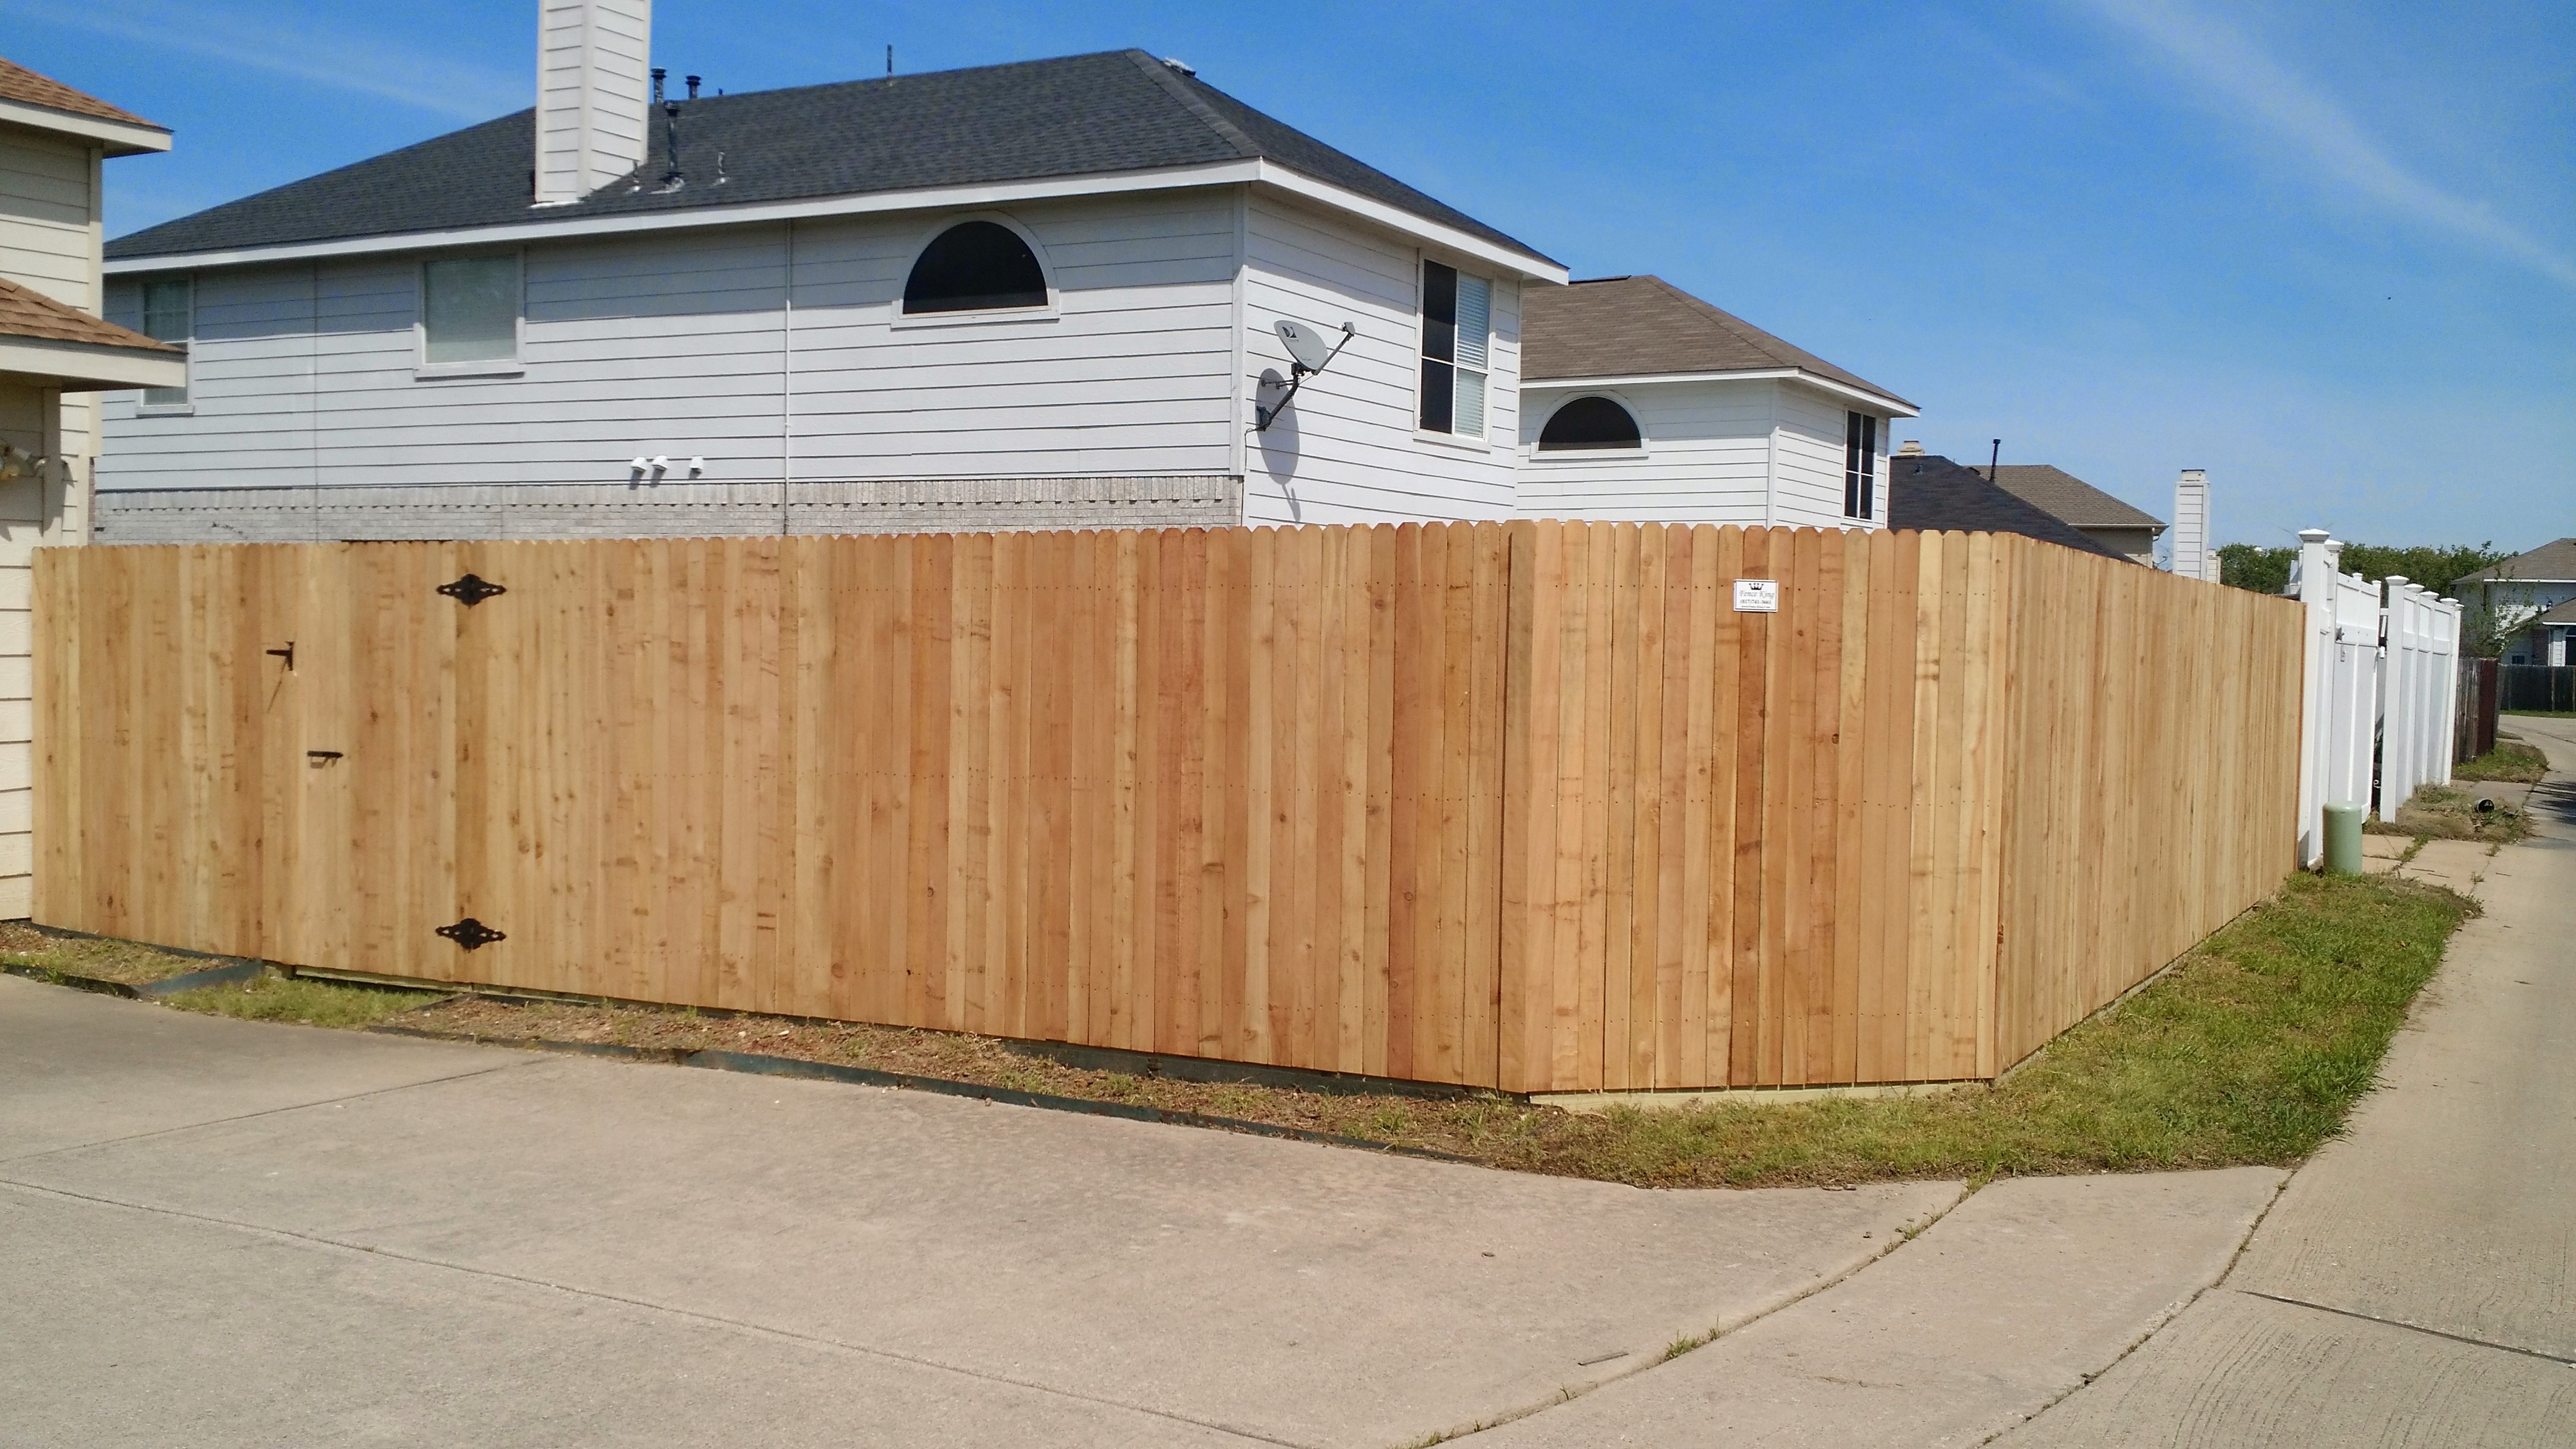 New Fences Fence King within sizing 4160 X 2340